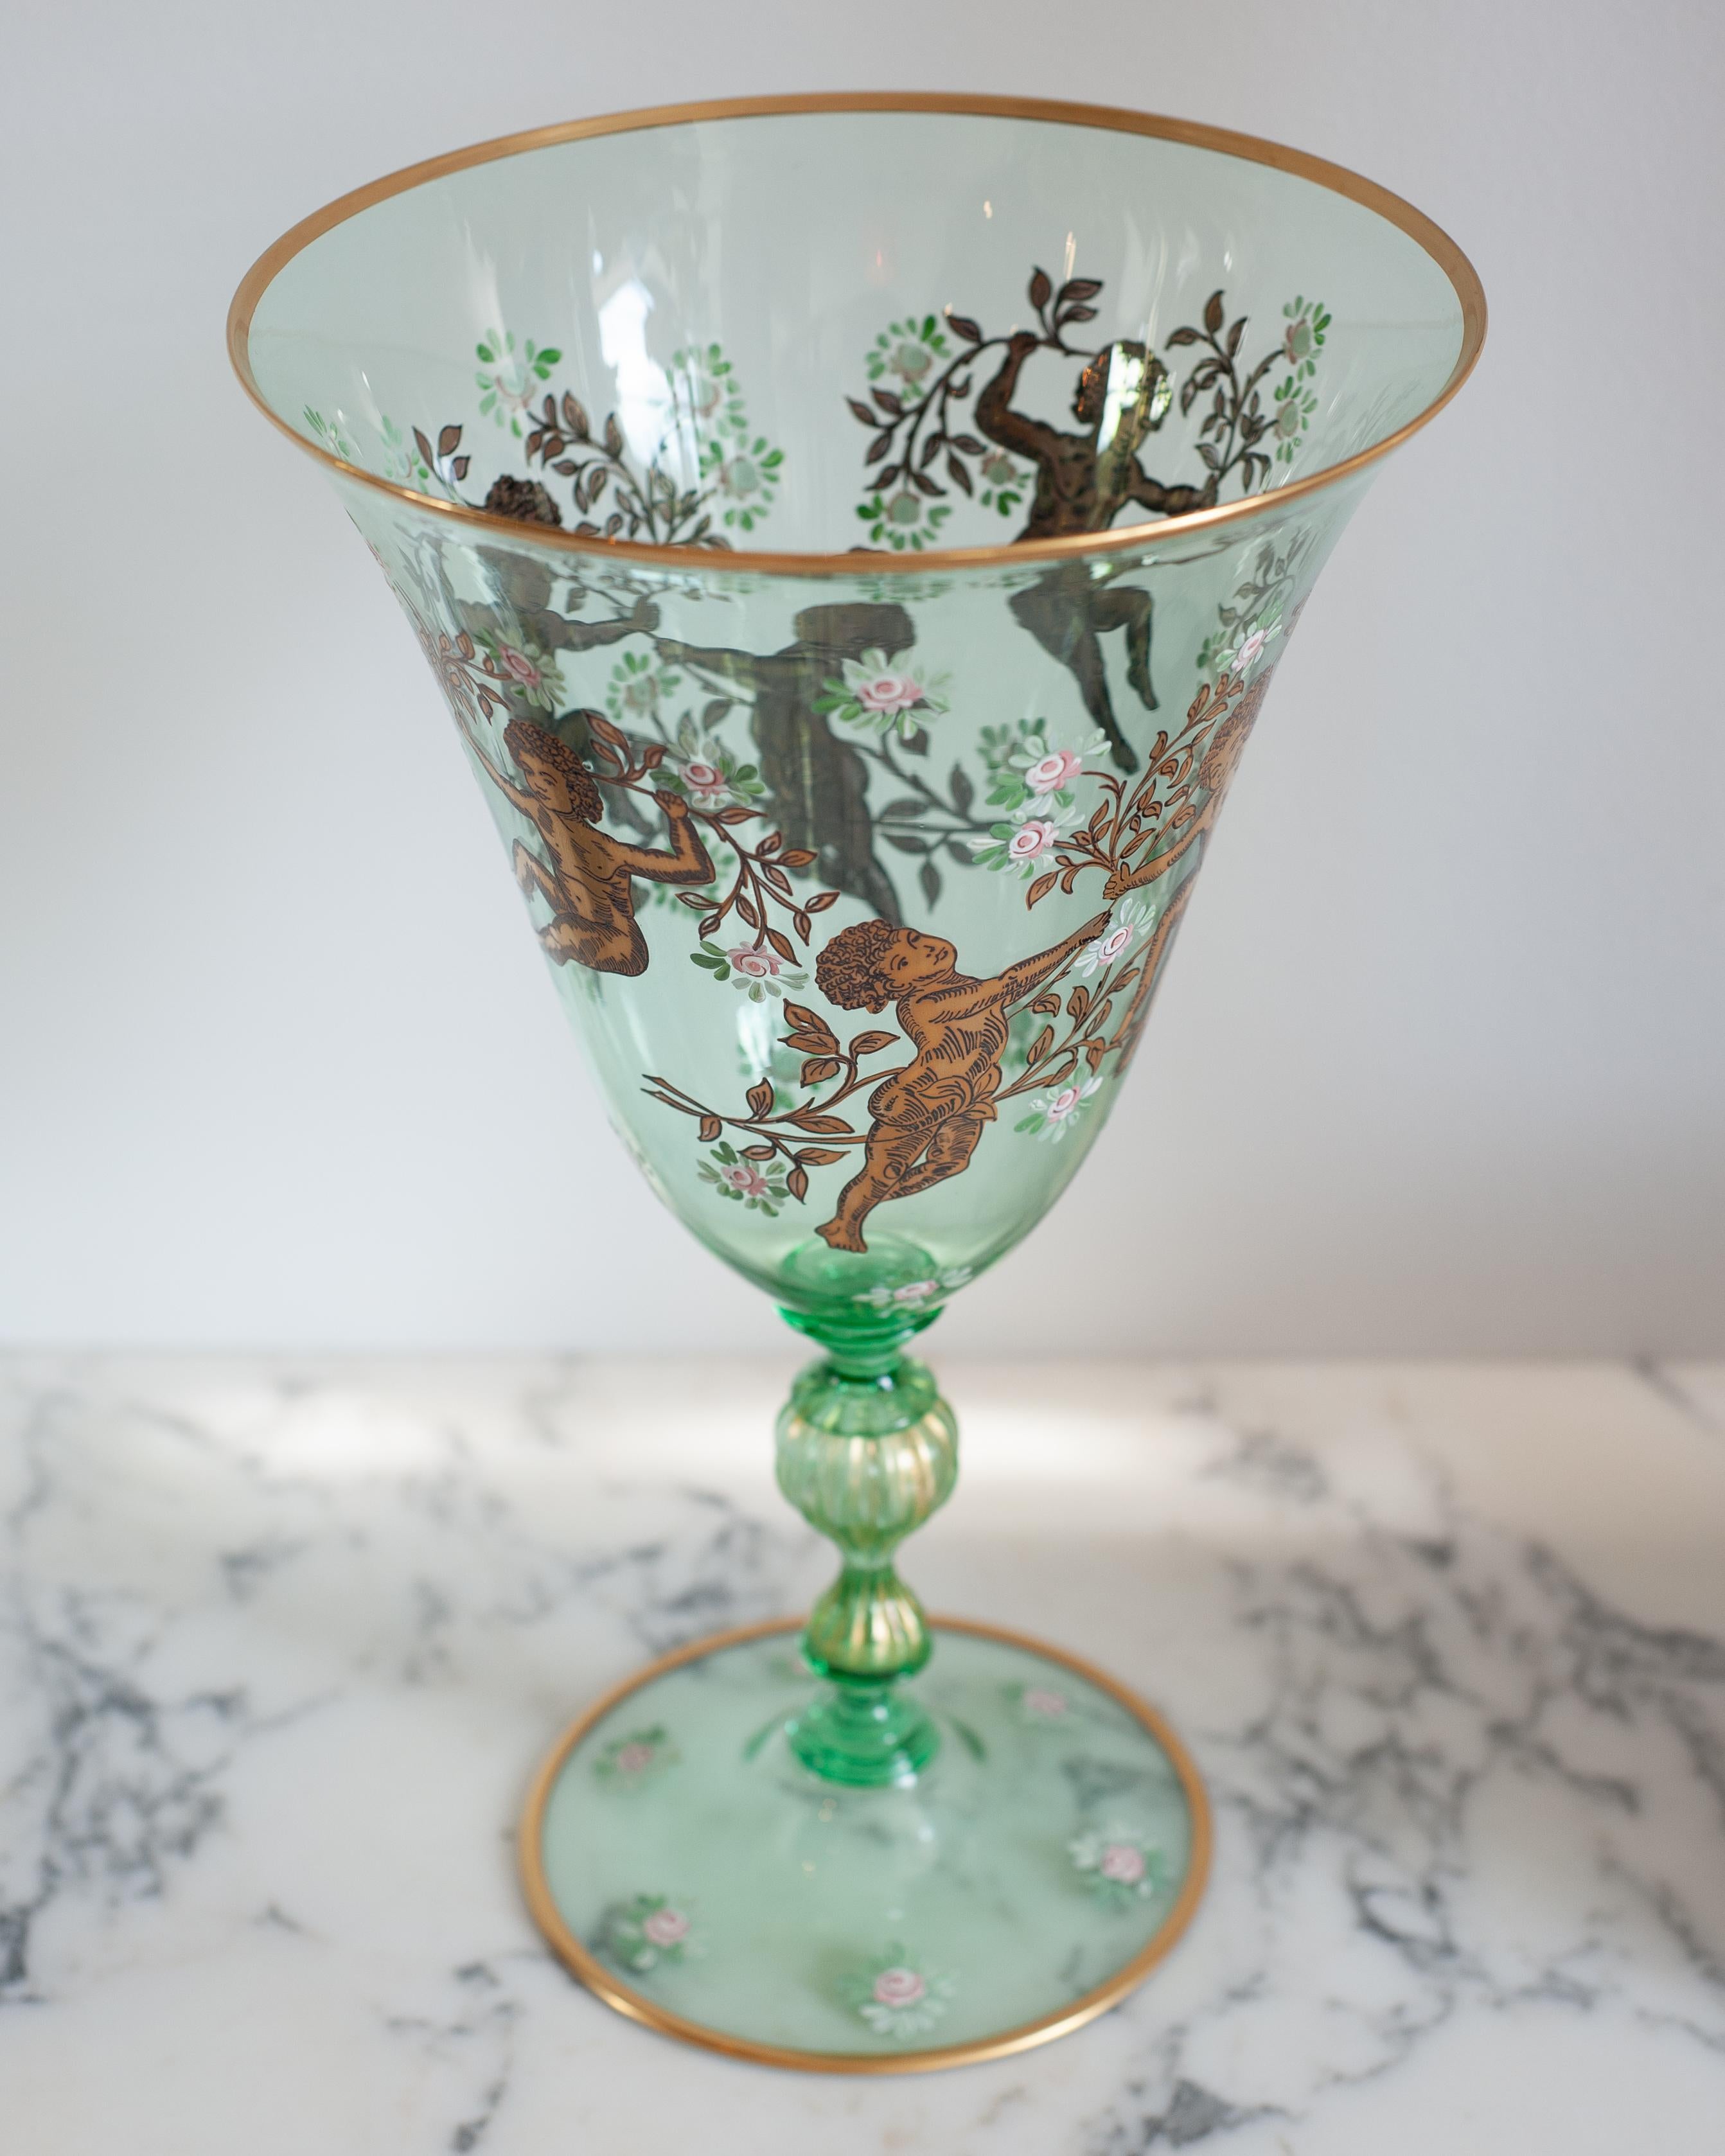 Apportez une touche d'élégance vénitienne dans votre maison avec ce vase Murano vert printanier fantaisiste, orné de feuilles d'or complexes. Décoré d'angelots et de motifs floraux, ce vase est une version moderne du design classique, nouvellement